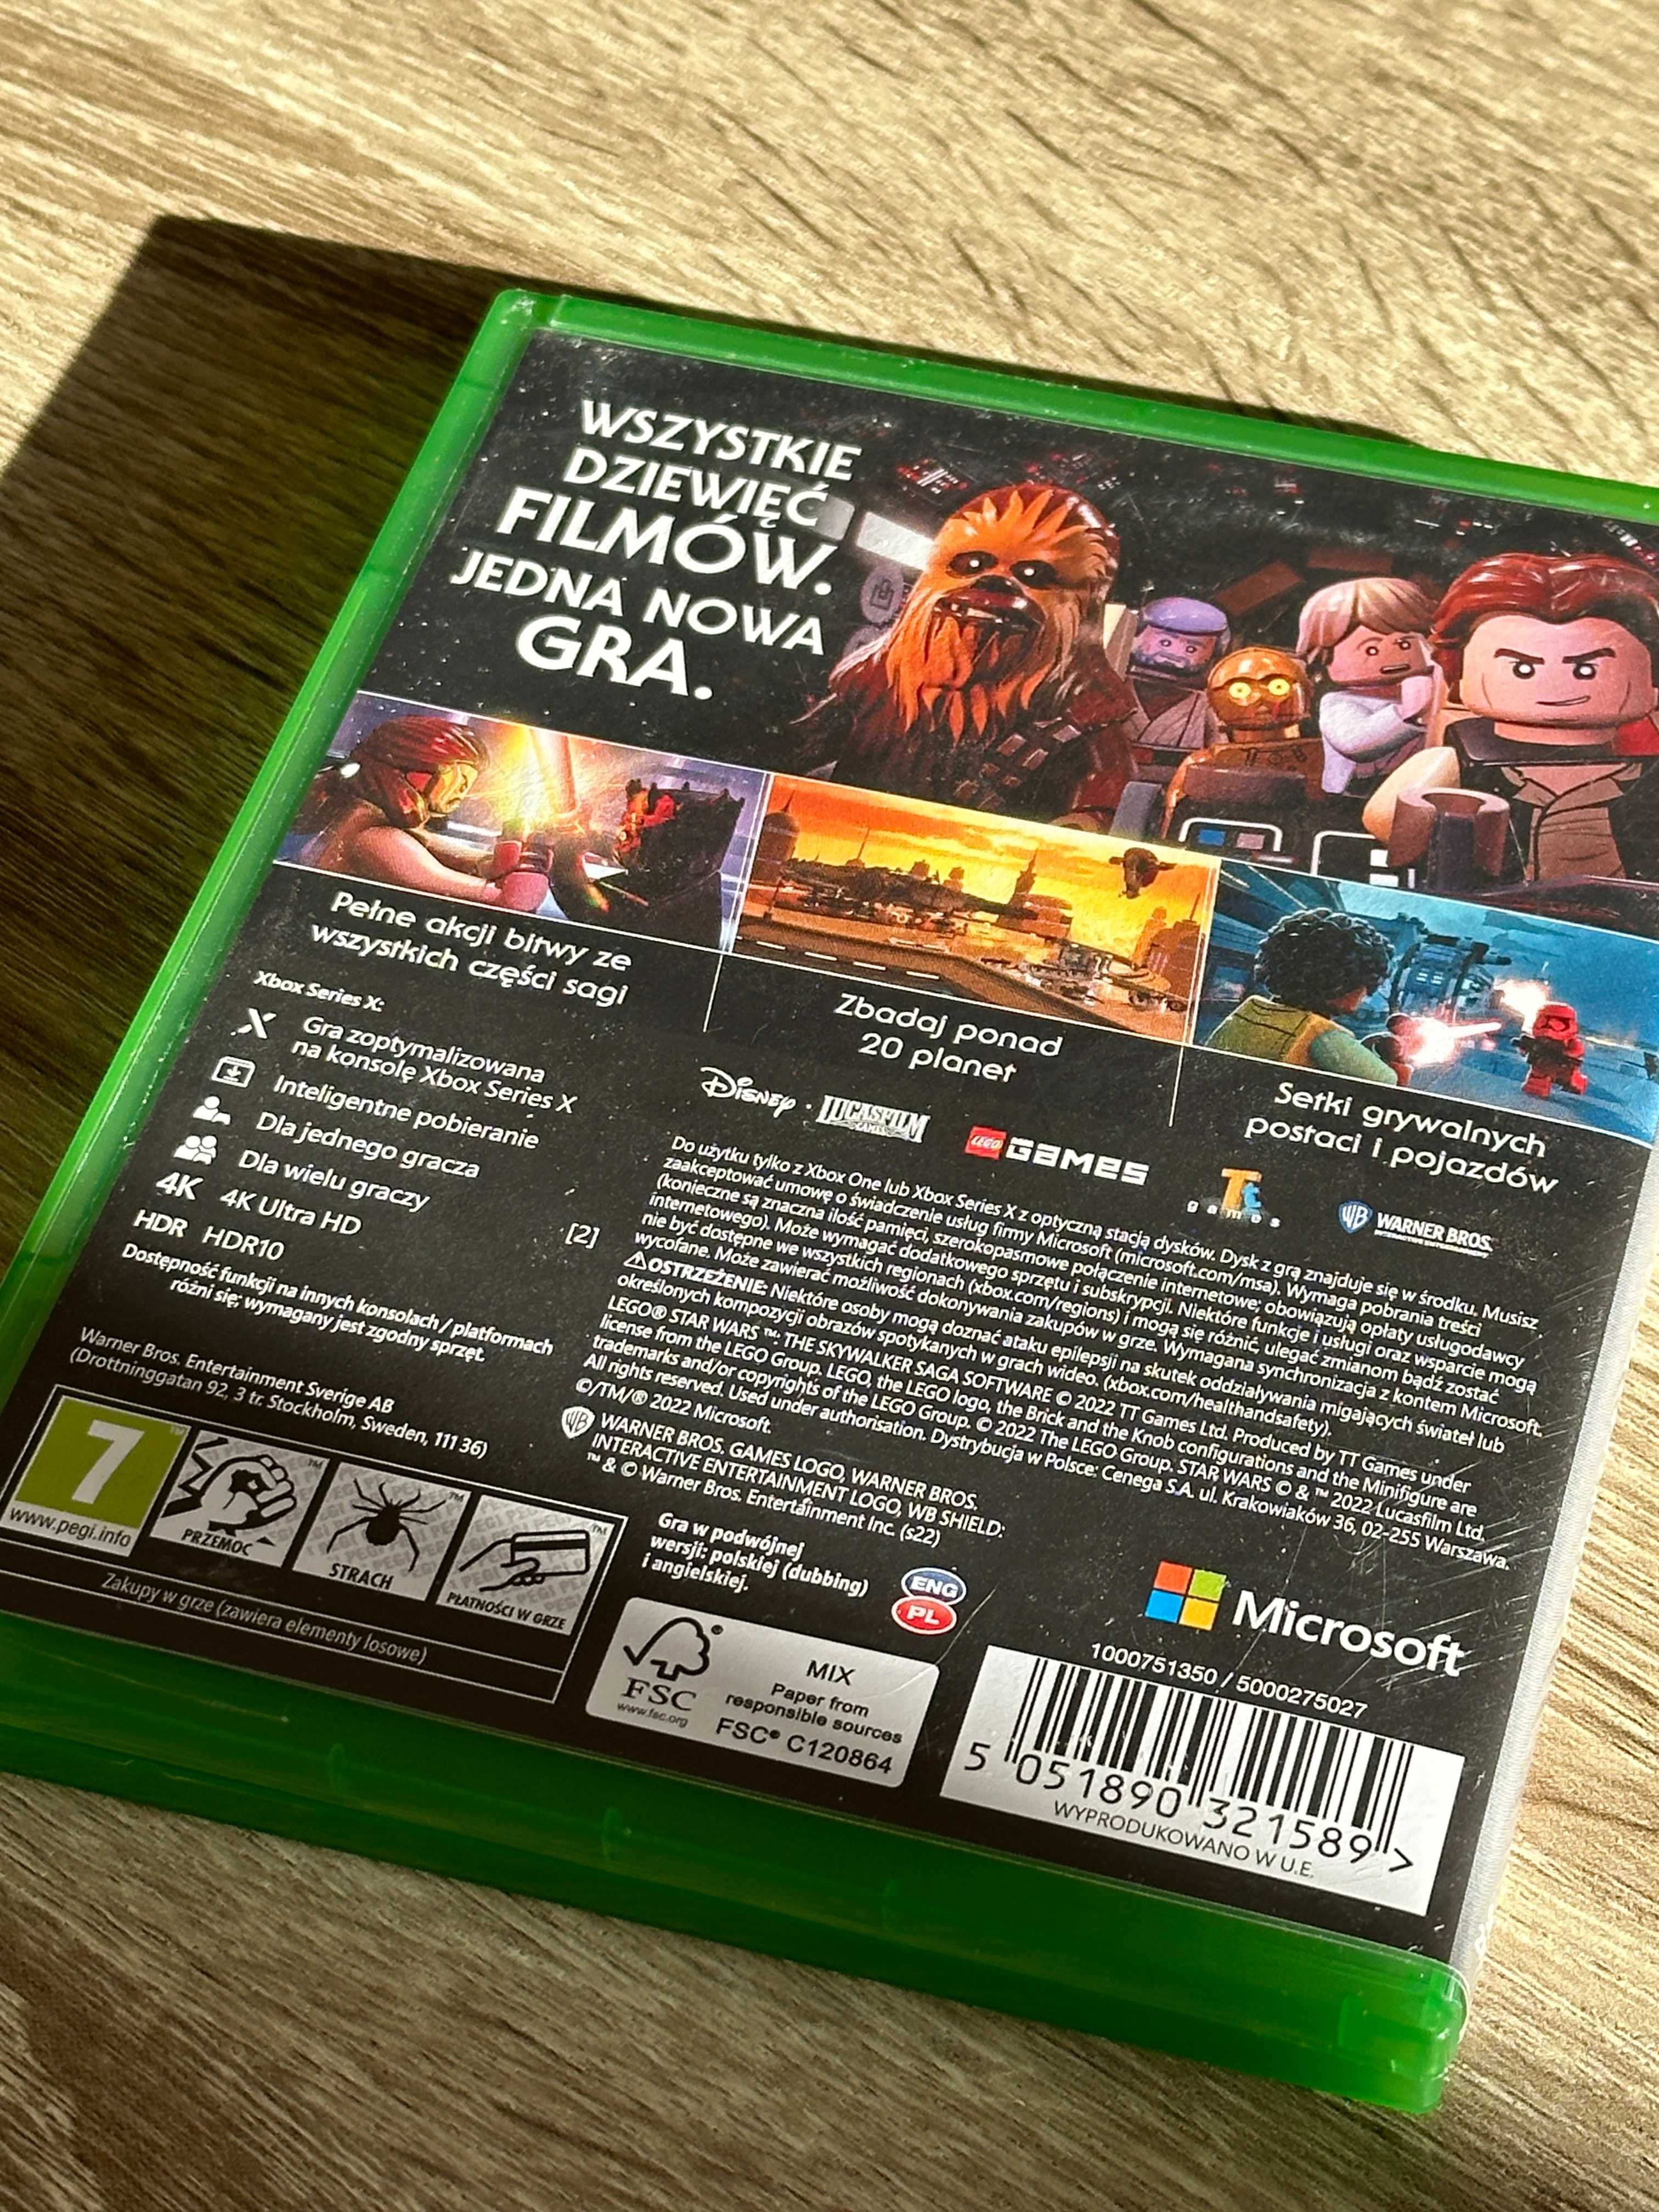 LEGO Star Wars: Saga Skywalkerów - Gra Xbox Series X/One